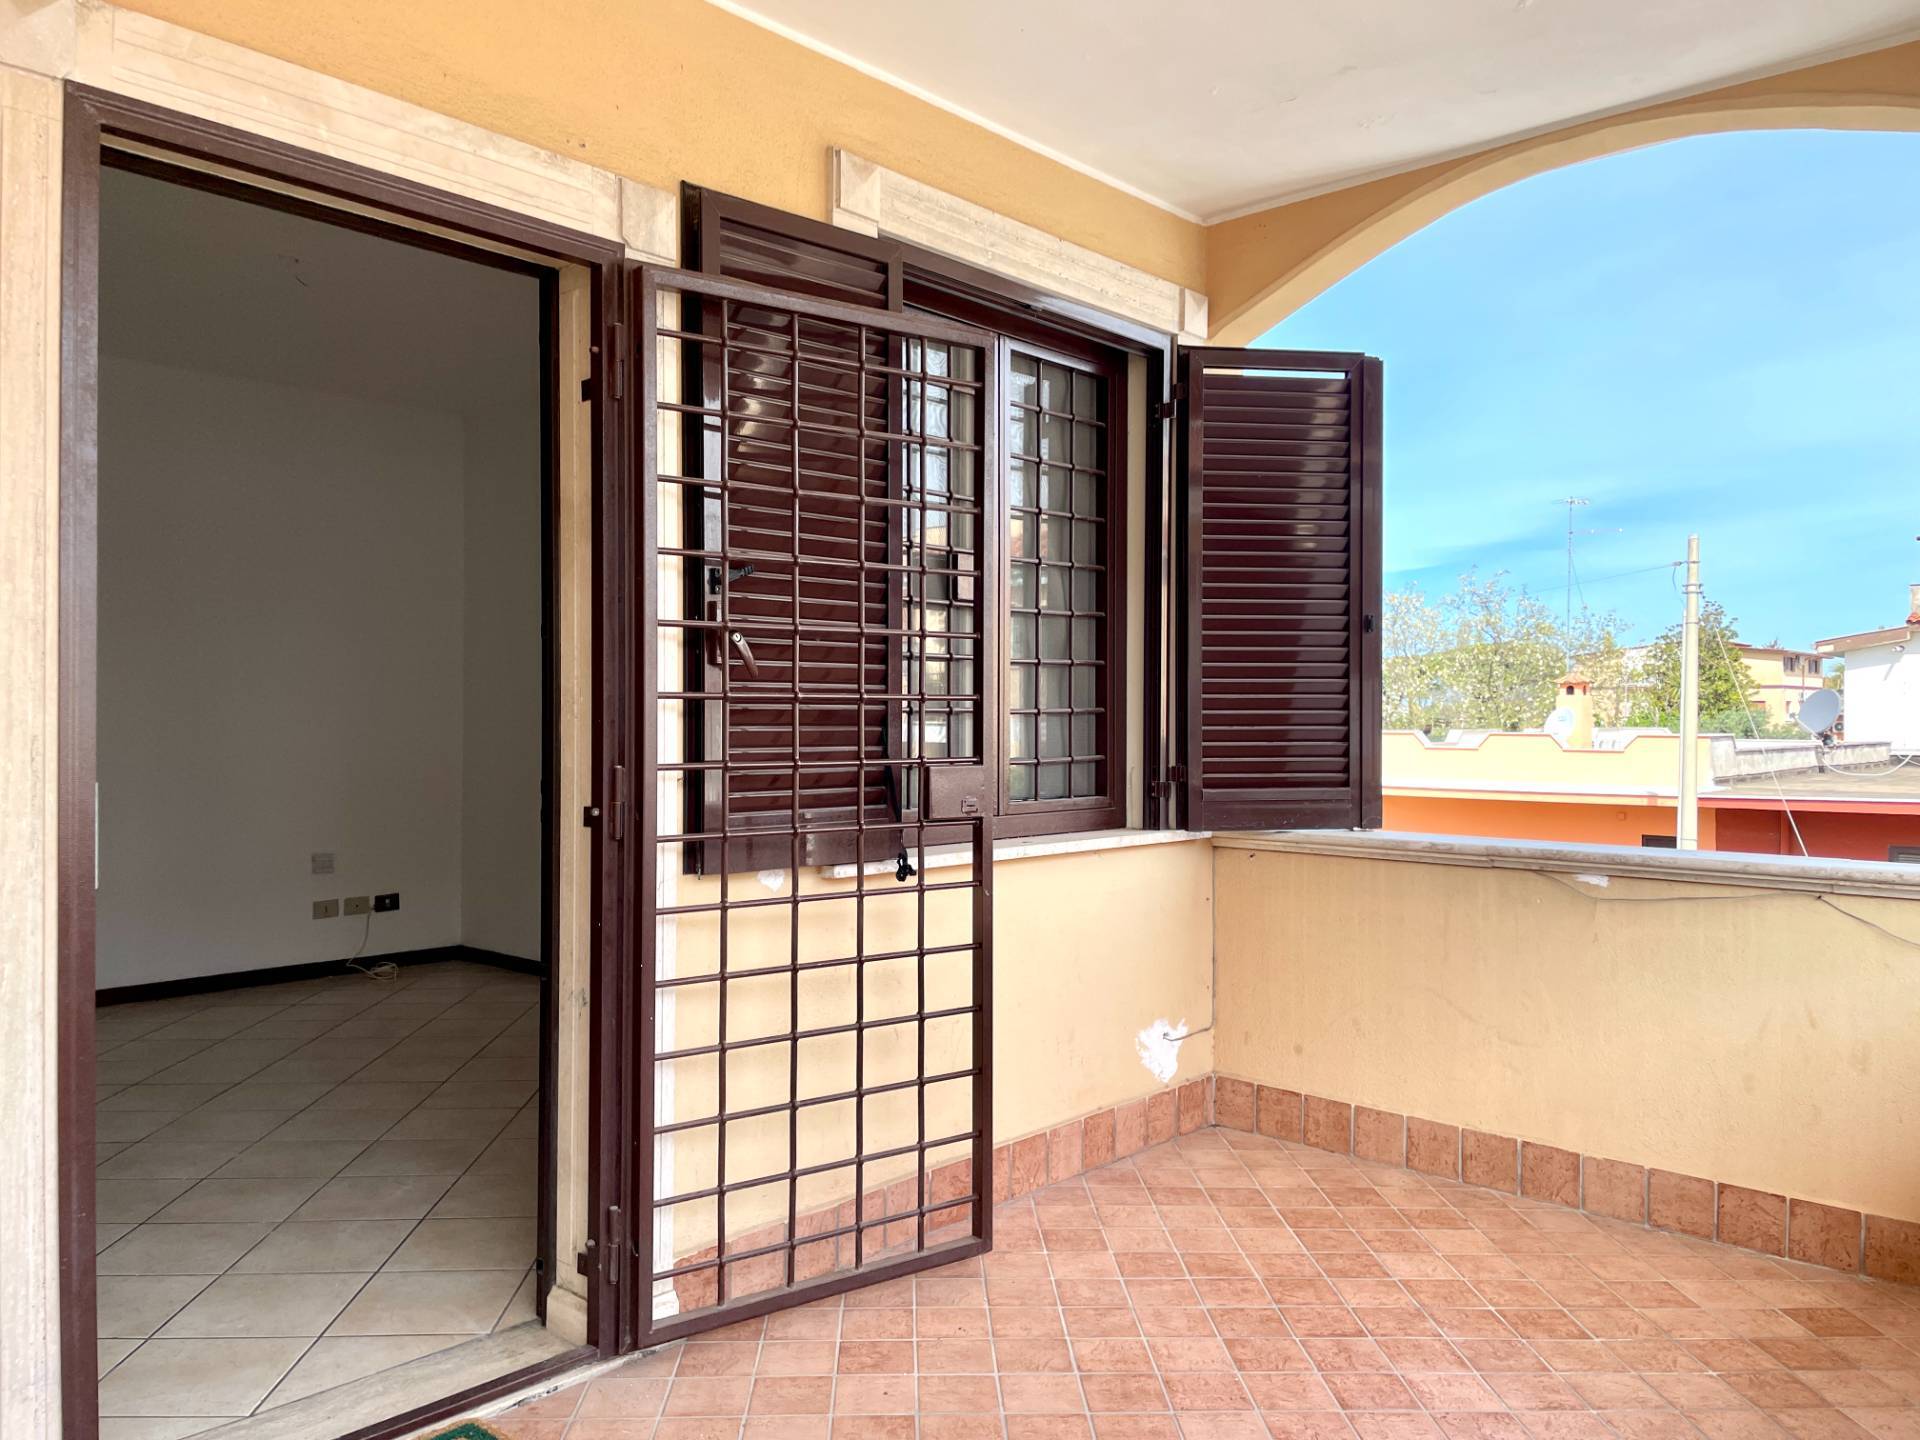 Appartamento in vendita a Ardea, 4 locali, zona Località: TorSanLorenzo, prezzo € 85.000 | PortaleAgenzieImmobiliari.it